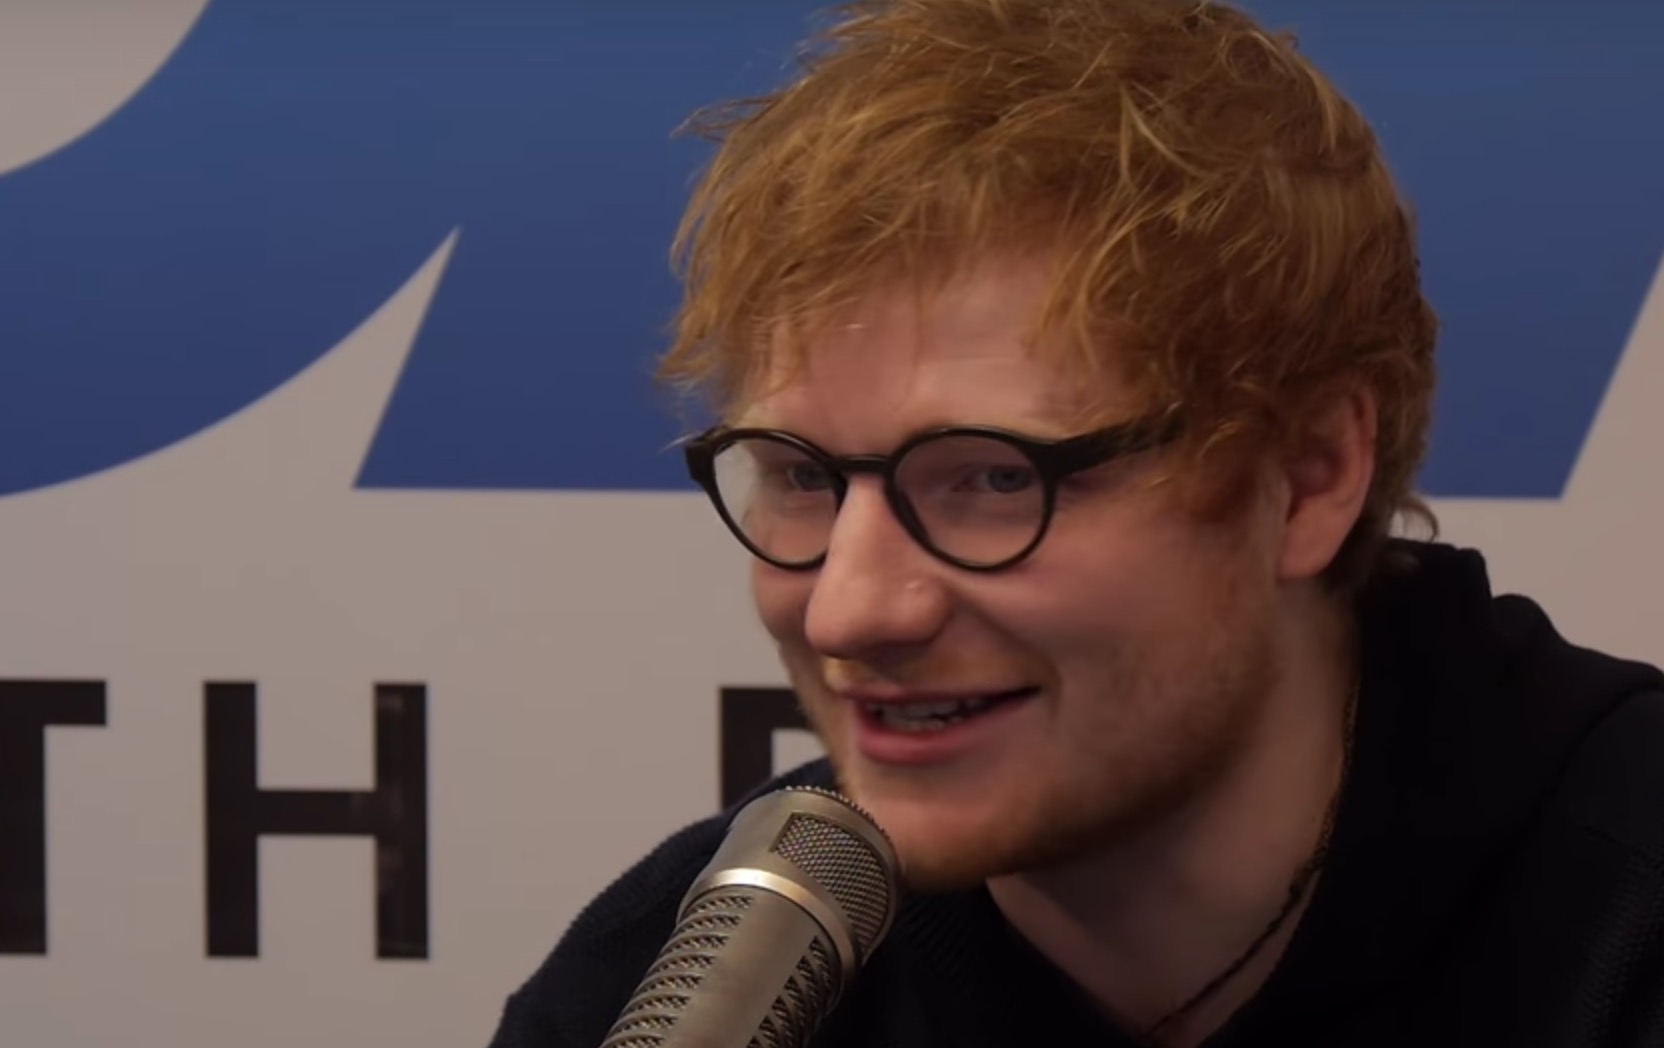  Ed Sheeran lanza nuevo single y cuenta que no le dejaron entrar a la fiesta post Grammy de su discográfica